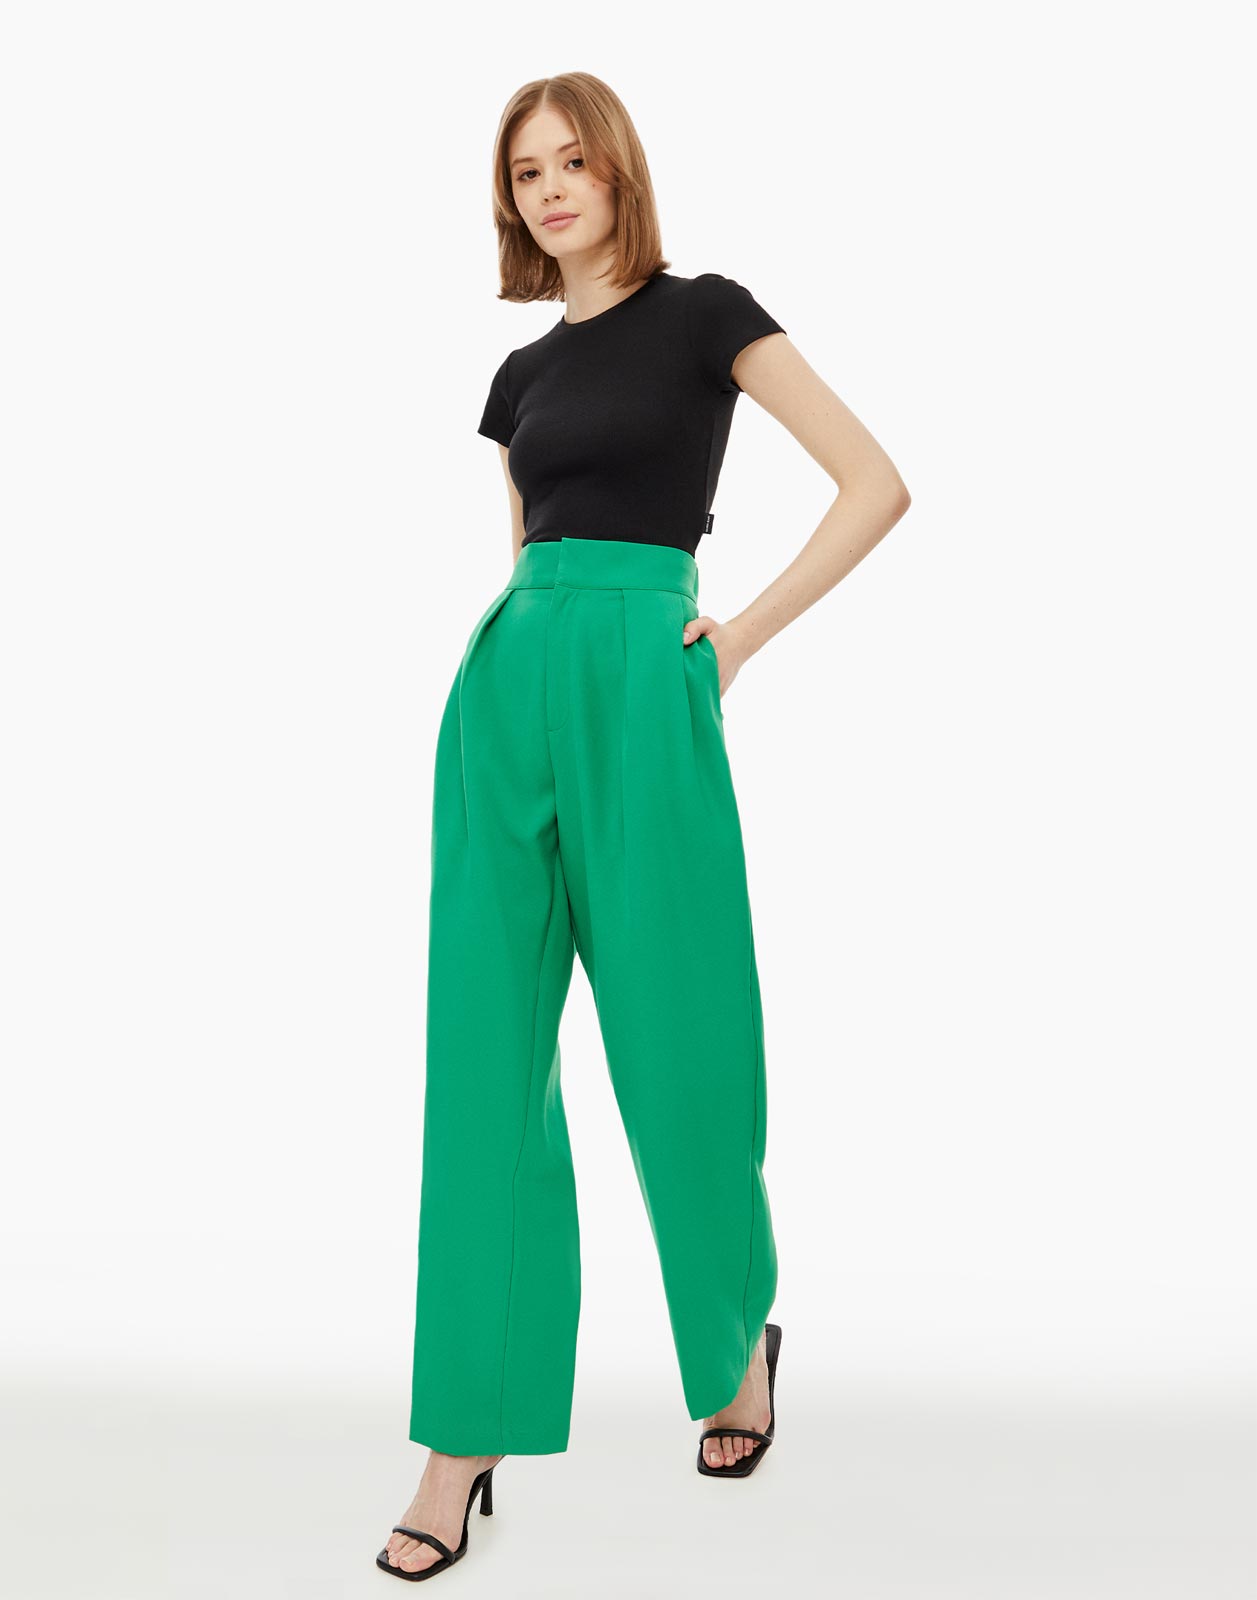 Брюки женские Gloria Jeans GPT008974 зеленые L/170